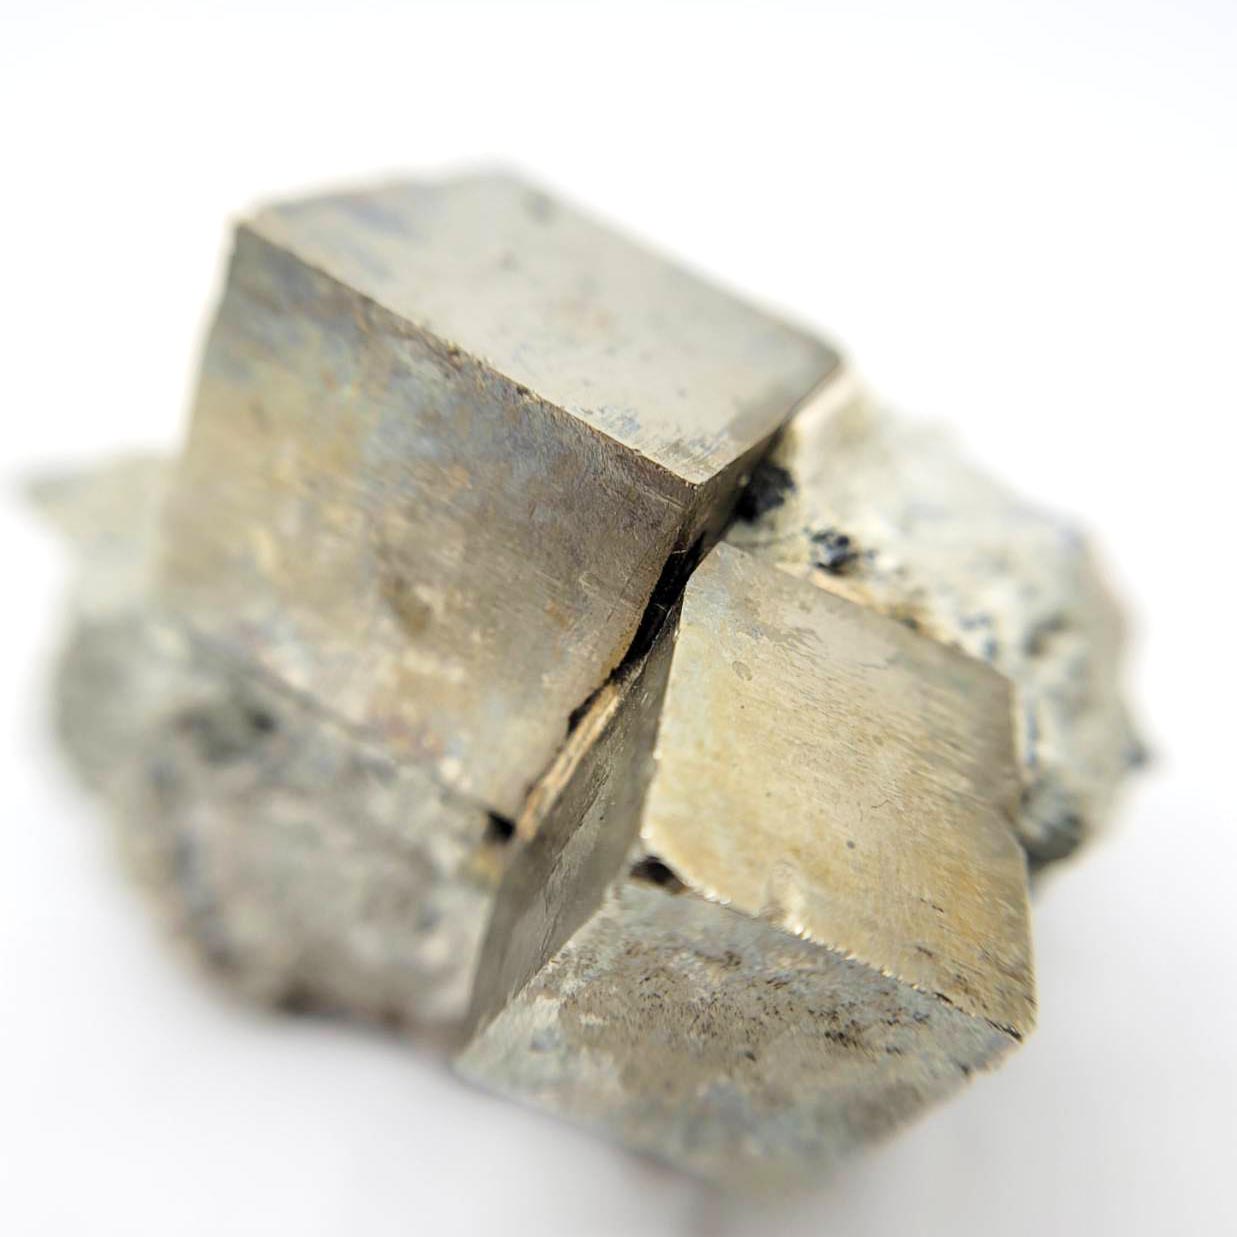 圖示-黃鐵礦(Pyrite)